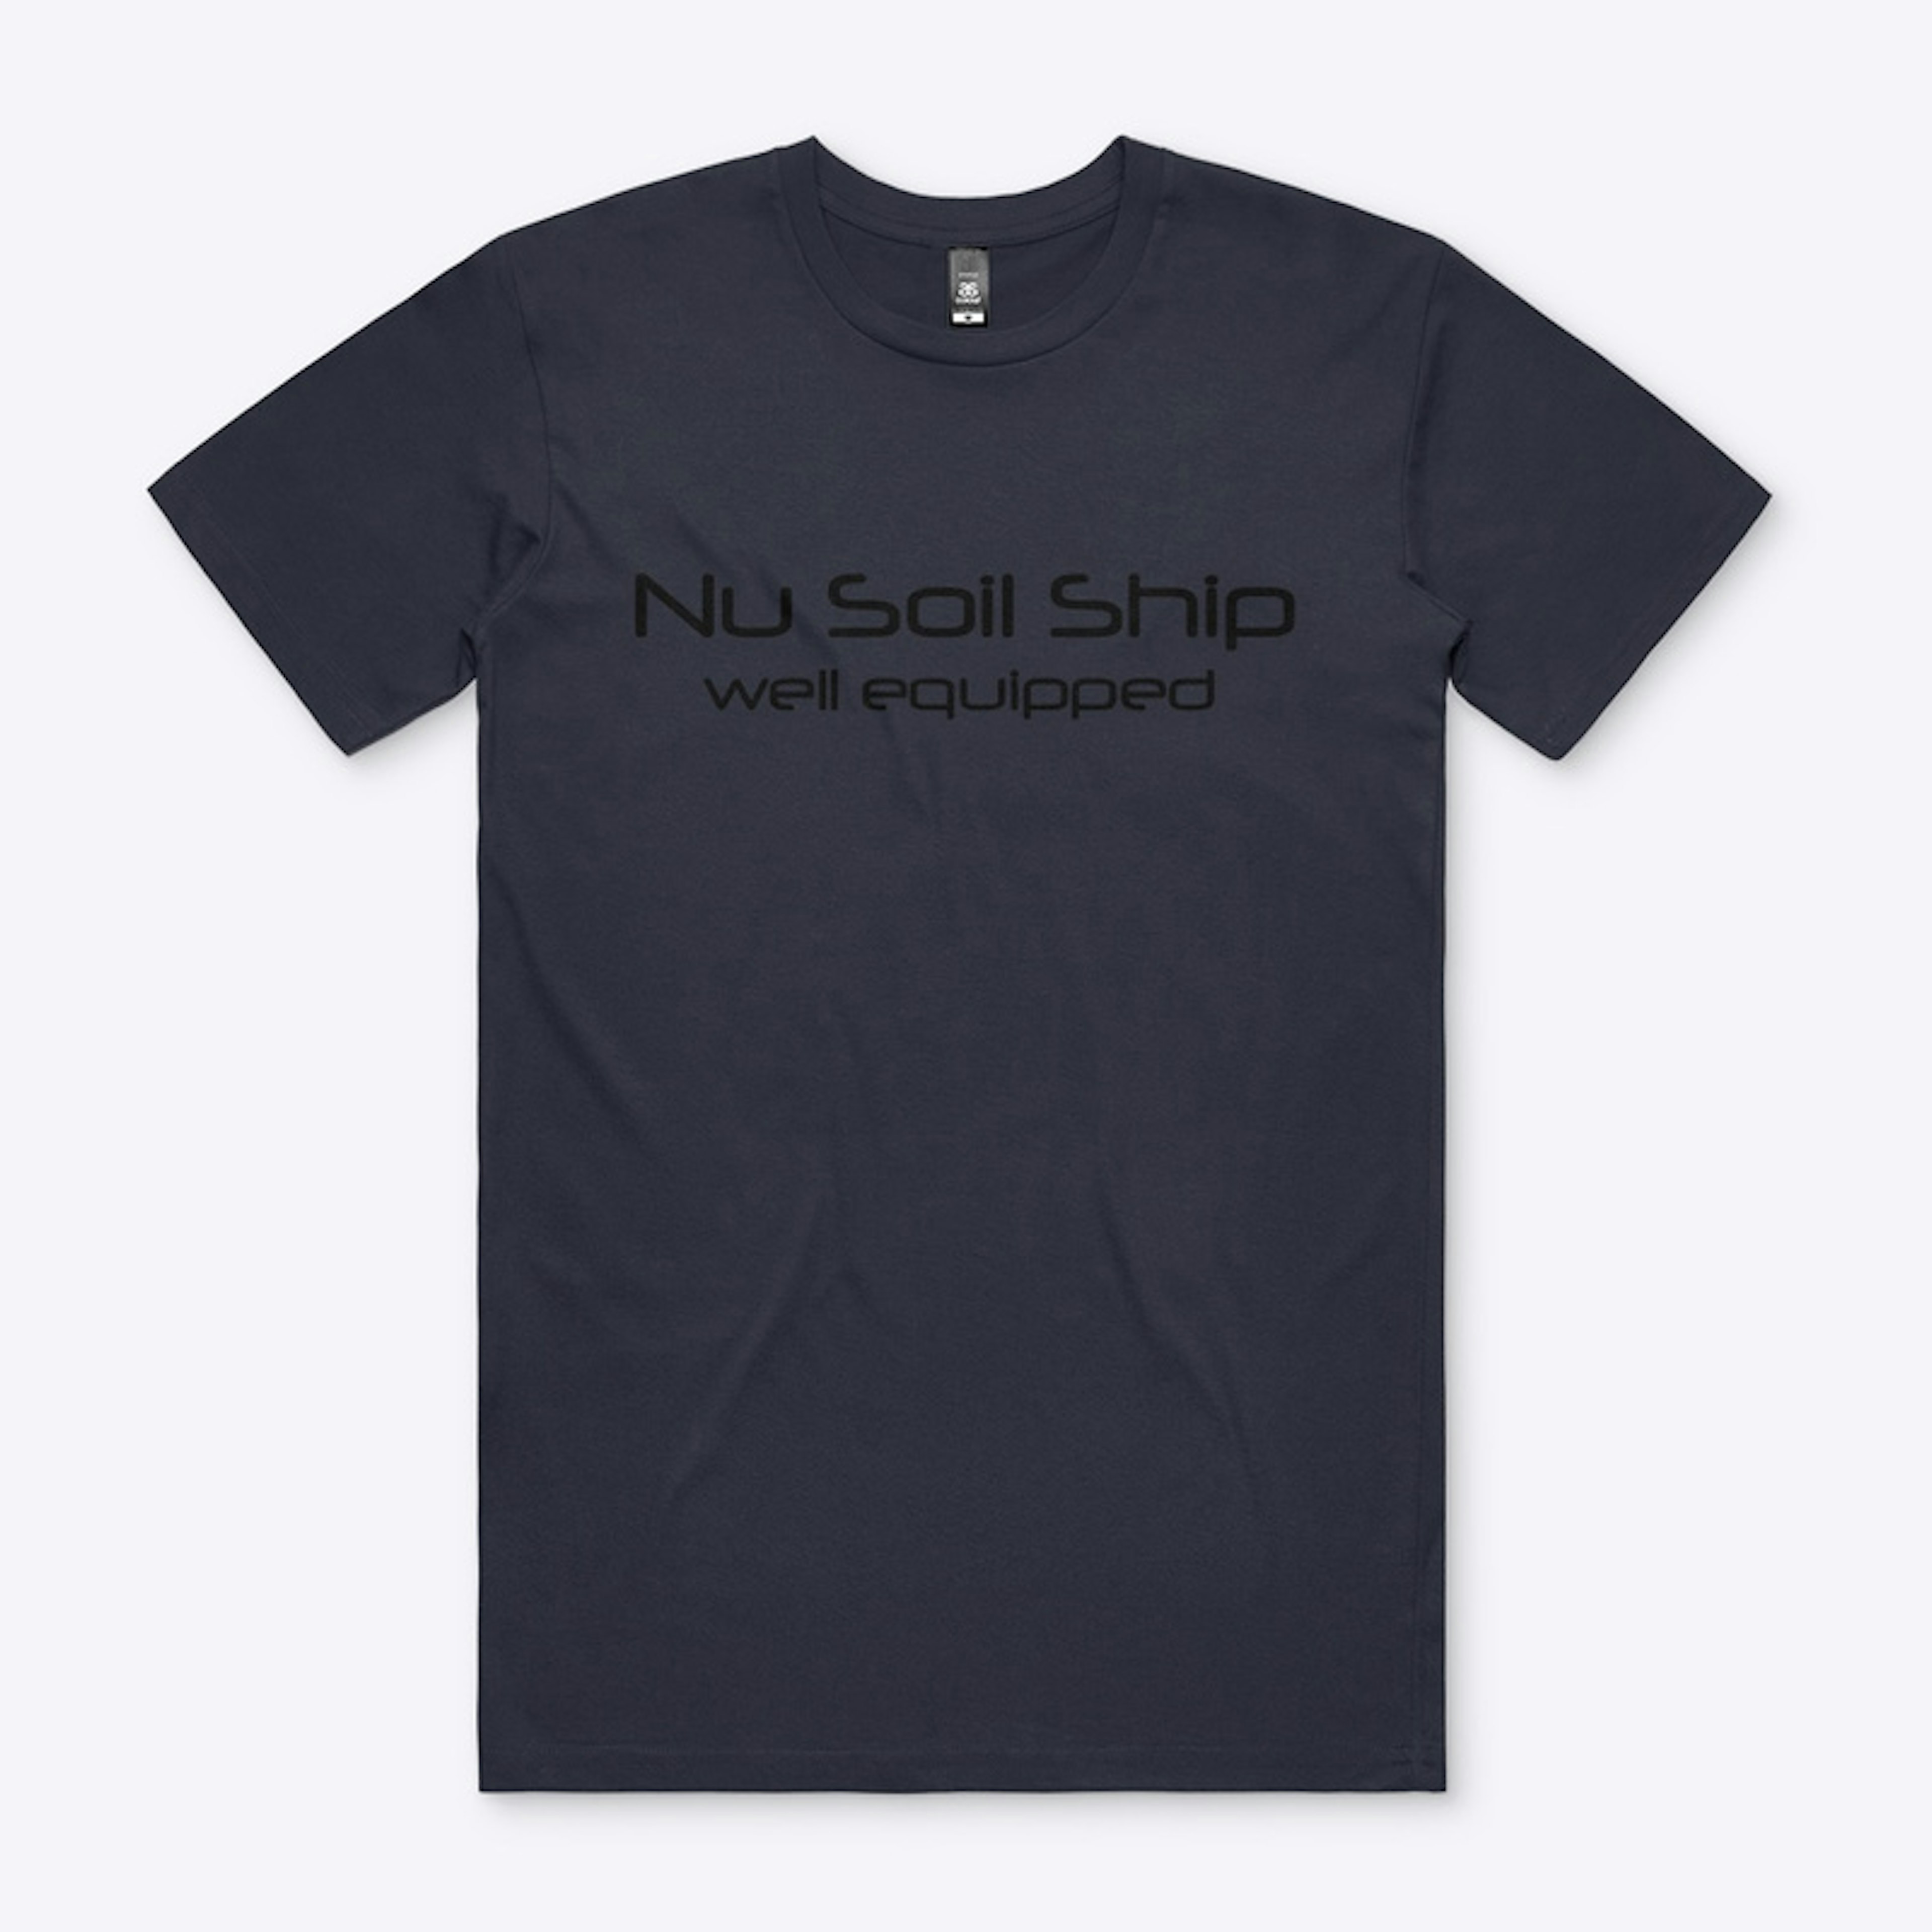 Nu Soil Ship